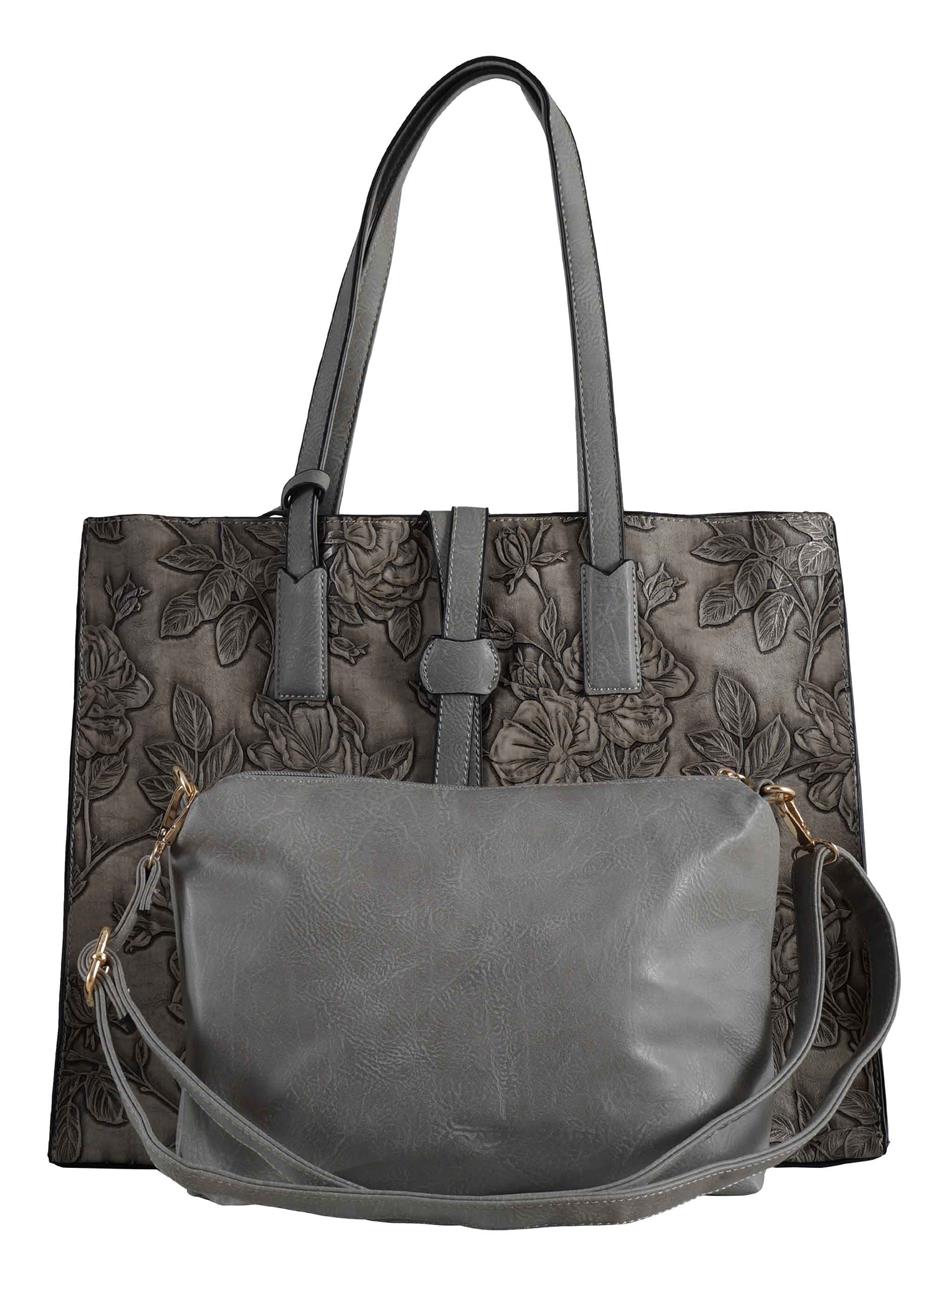 Γυναικεία τσάντα δερματίνη με ανάγλυφο print περιλαμβάνει messenger bag. timeless style.